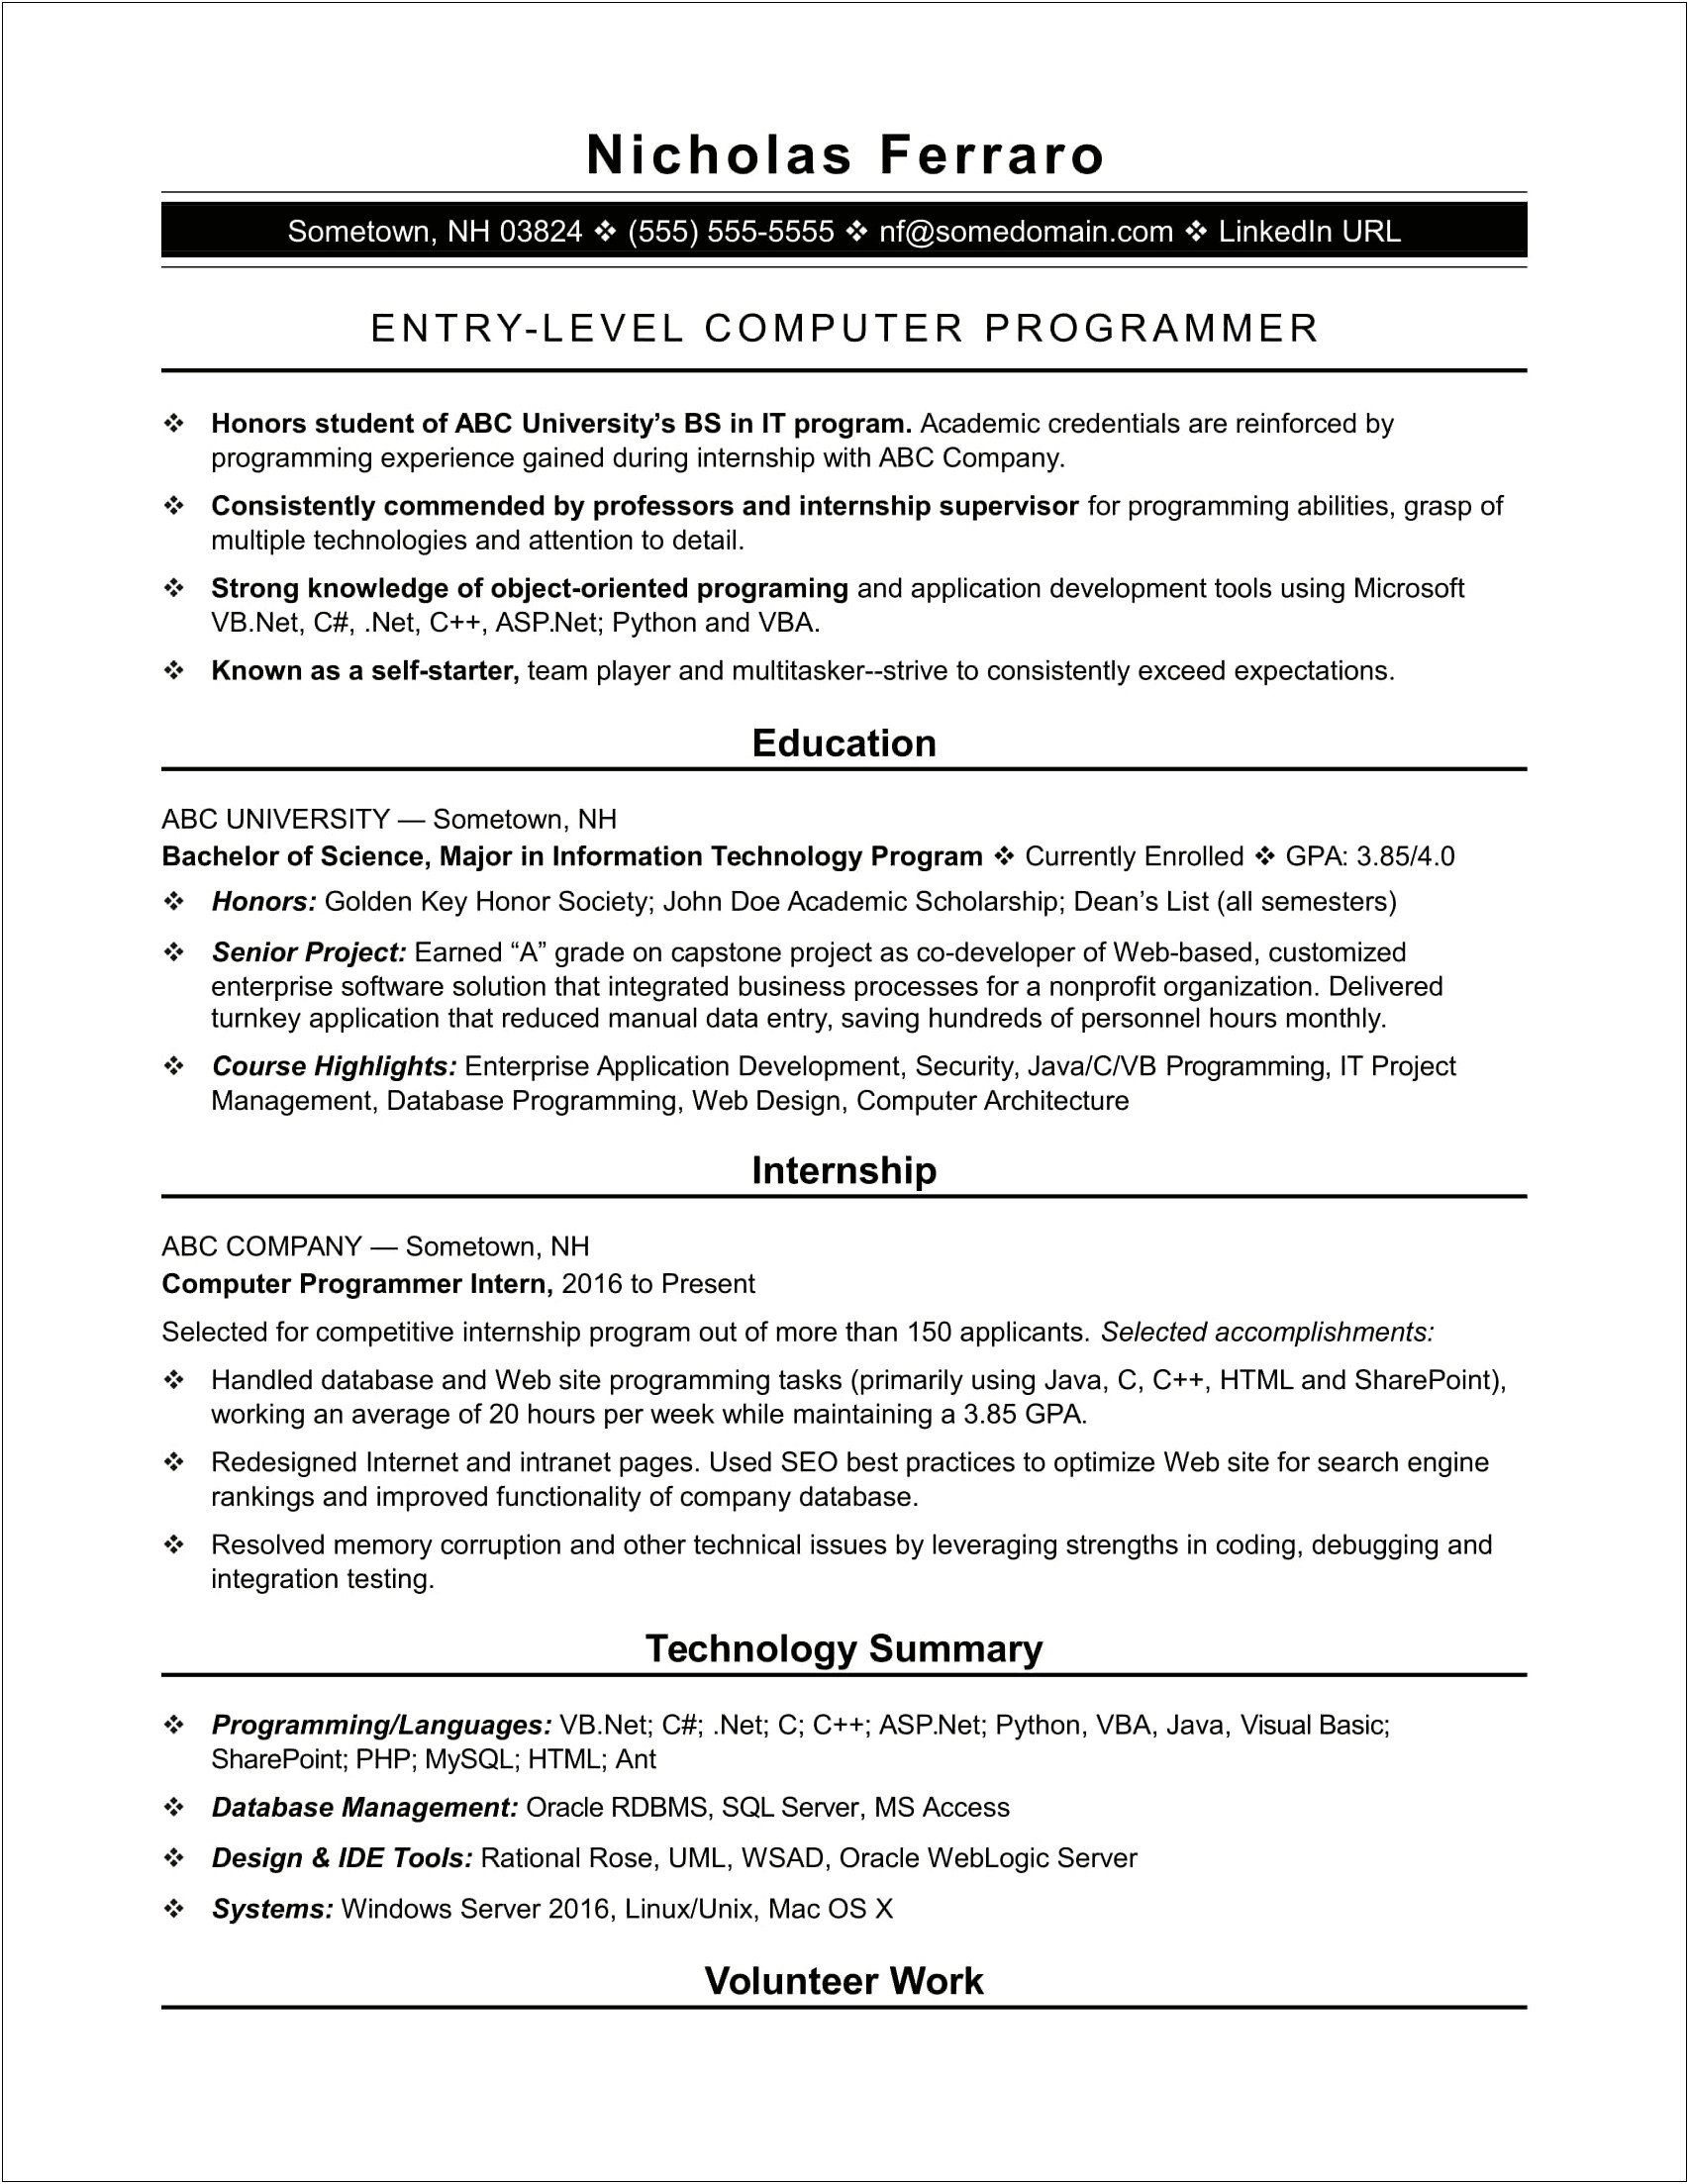 Sample Resume For Junior Sql Dba